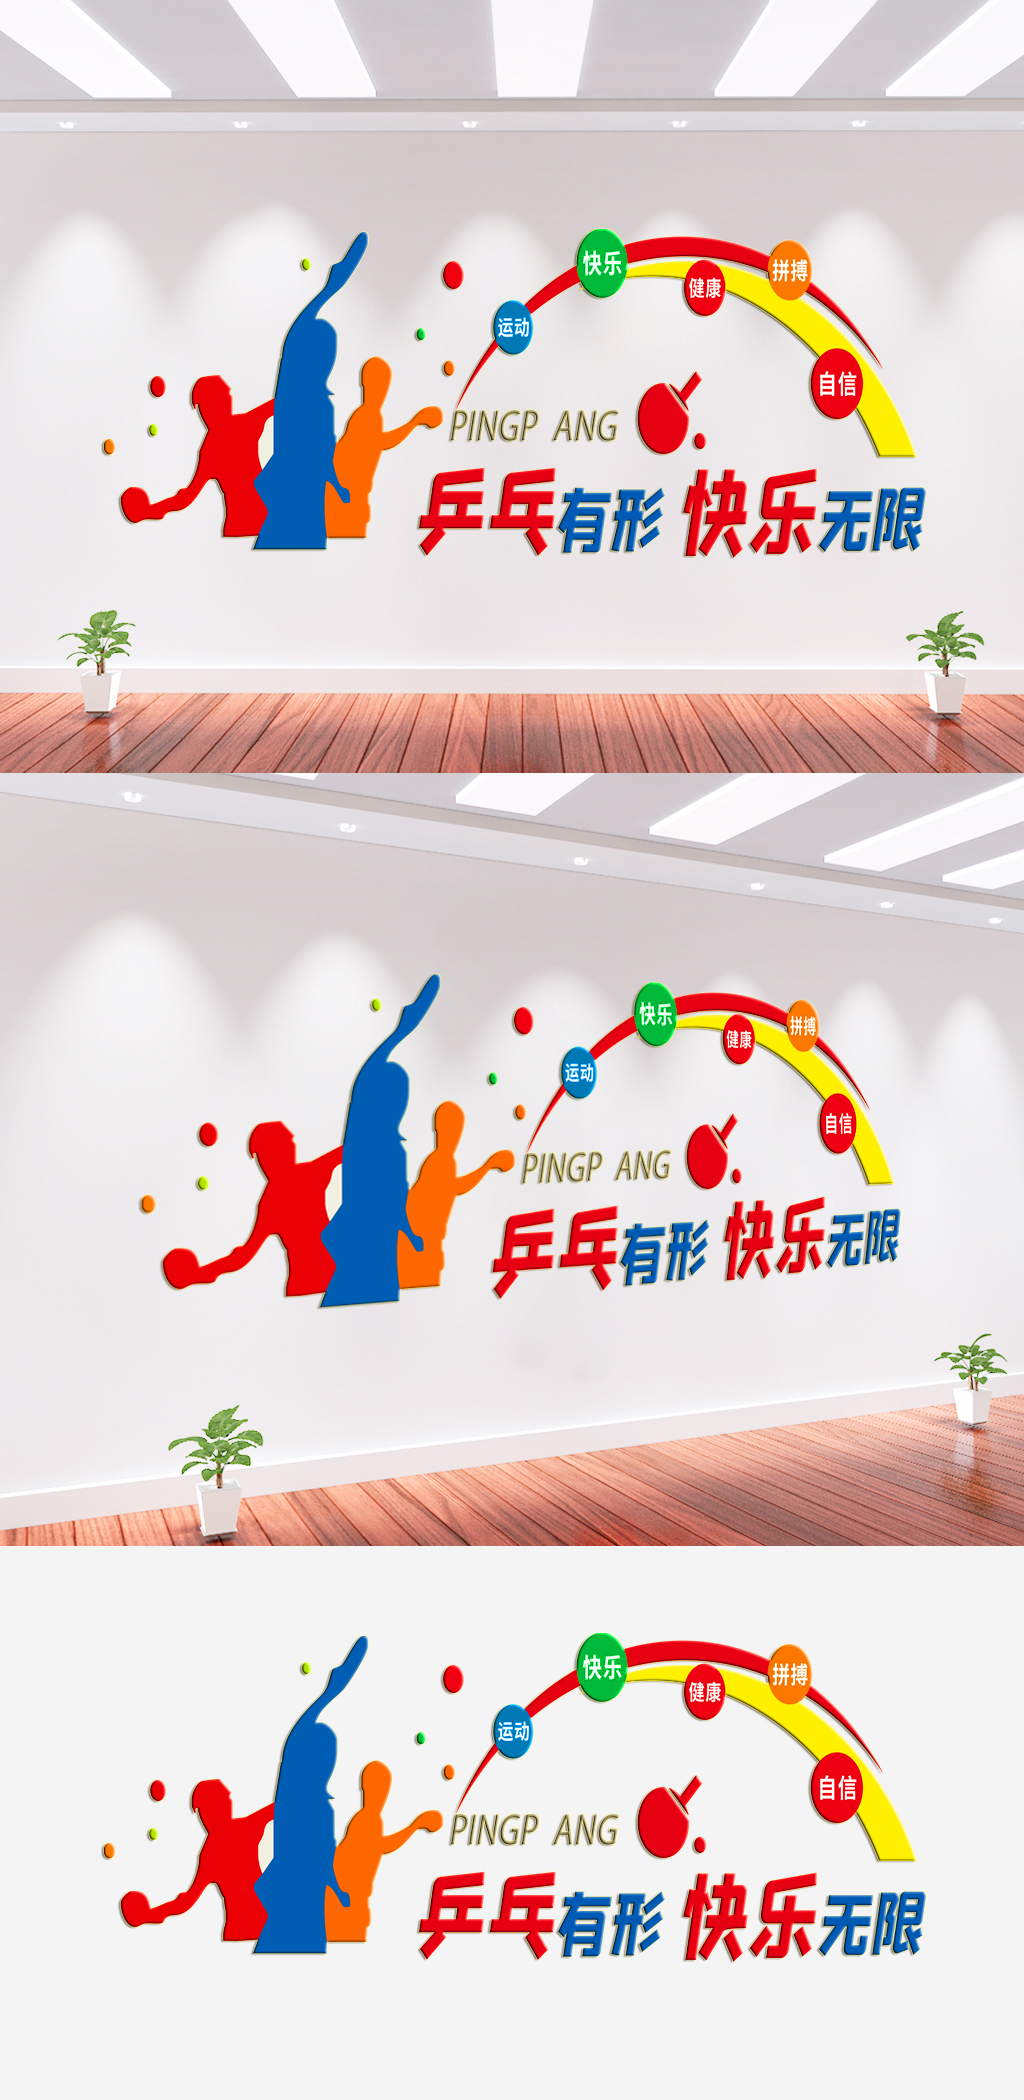 乒乓球室文化墙图案图片